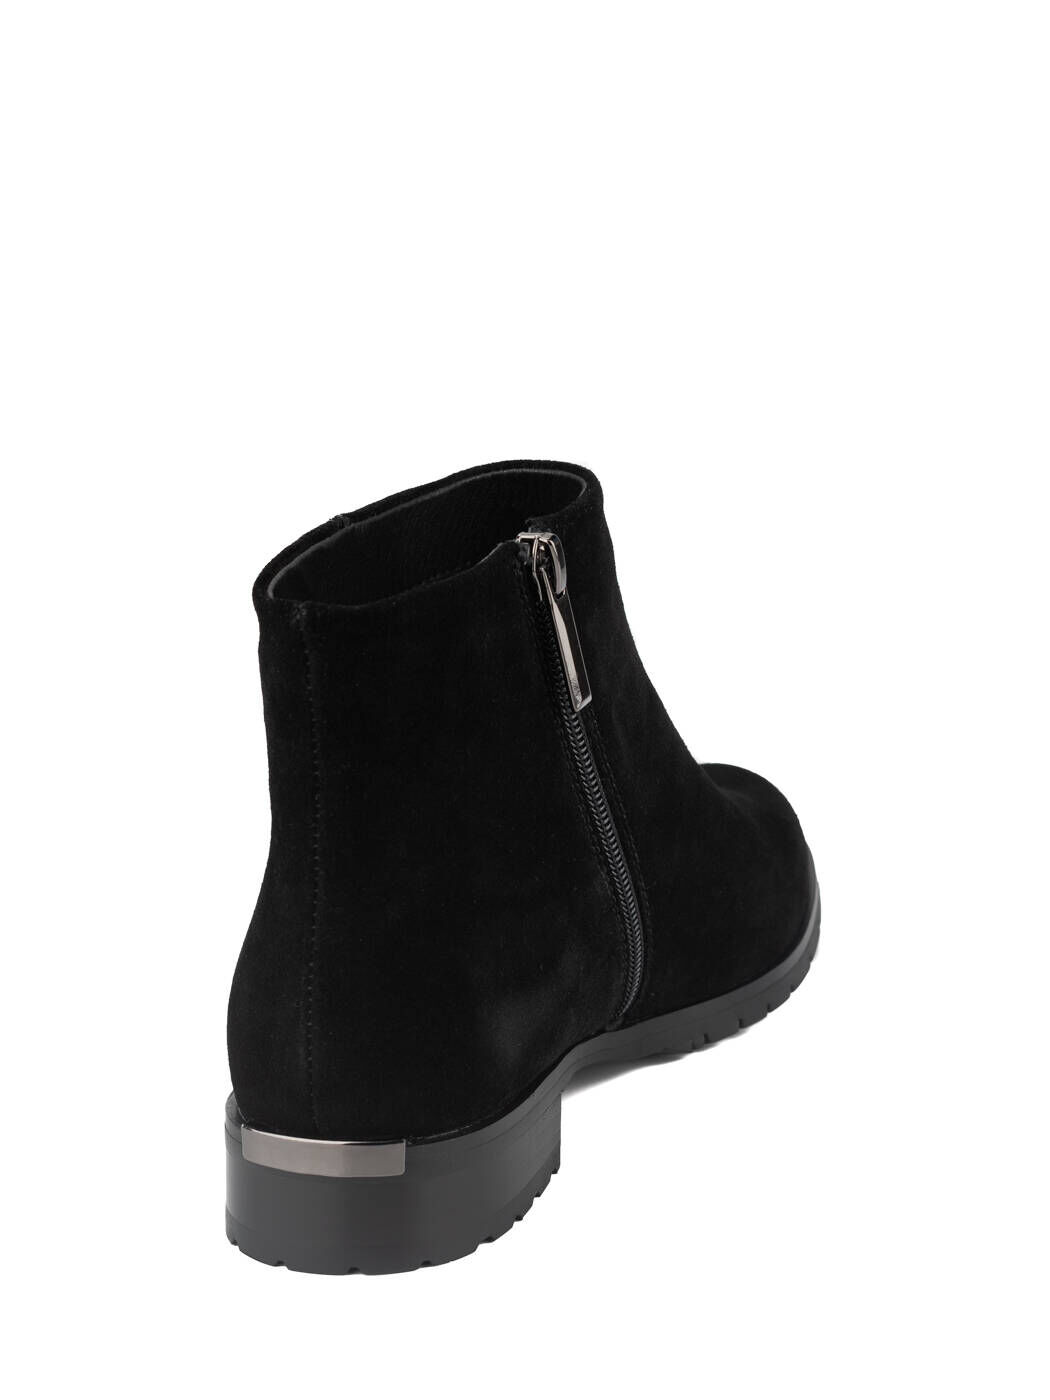 Ботинки женские черные замша каблук устойчивый демисезон вид 1